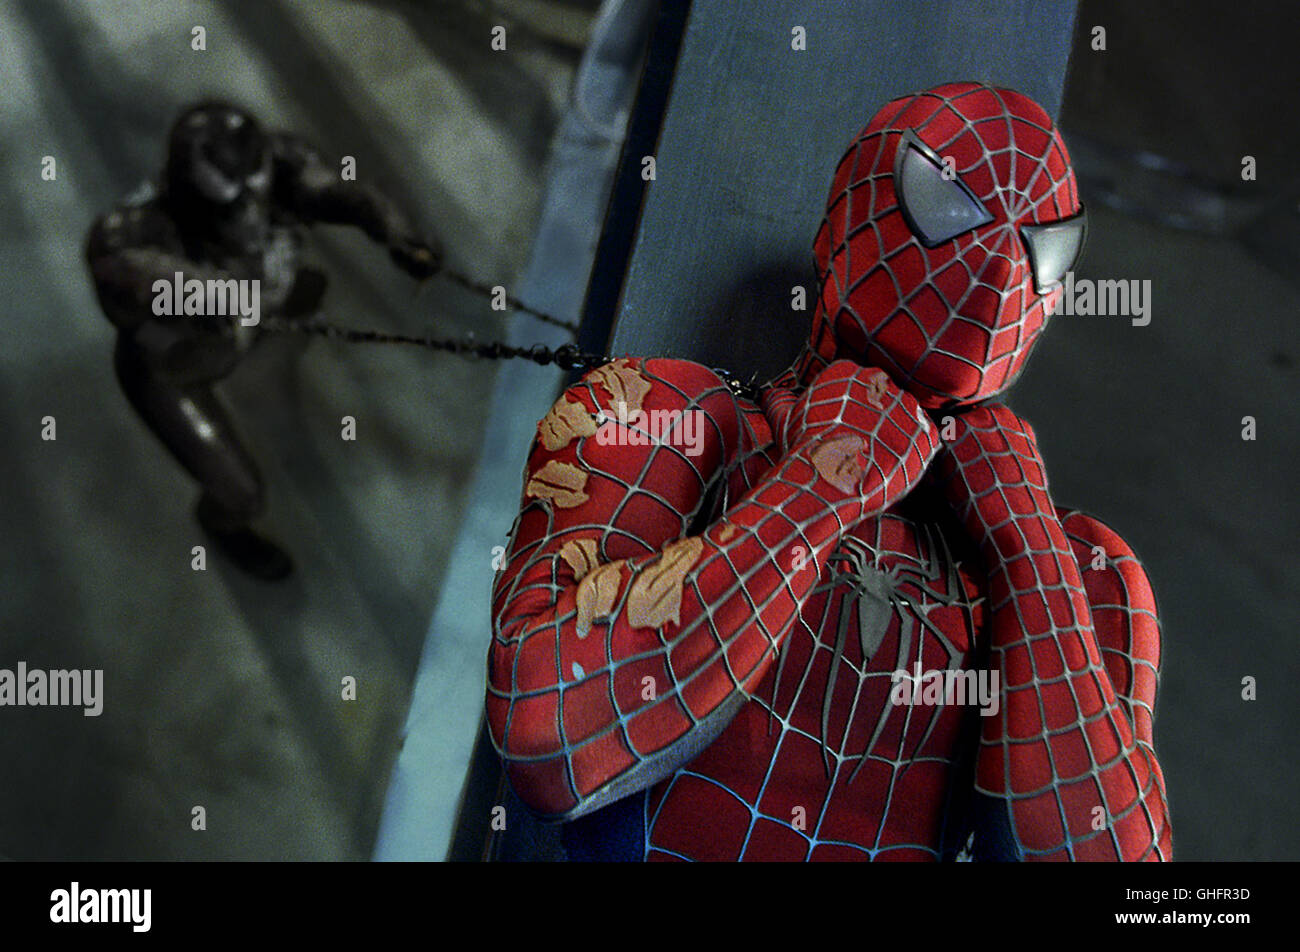 Spider-Man 3 / Venom (TOPHER GRACE) and Spider-Man (TOBEY MAGUIRE) Regie:  Sam Raimi aka. Spider-Man 3 Stock Photo - Alamy